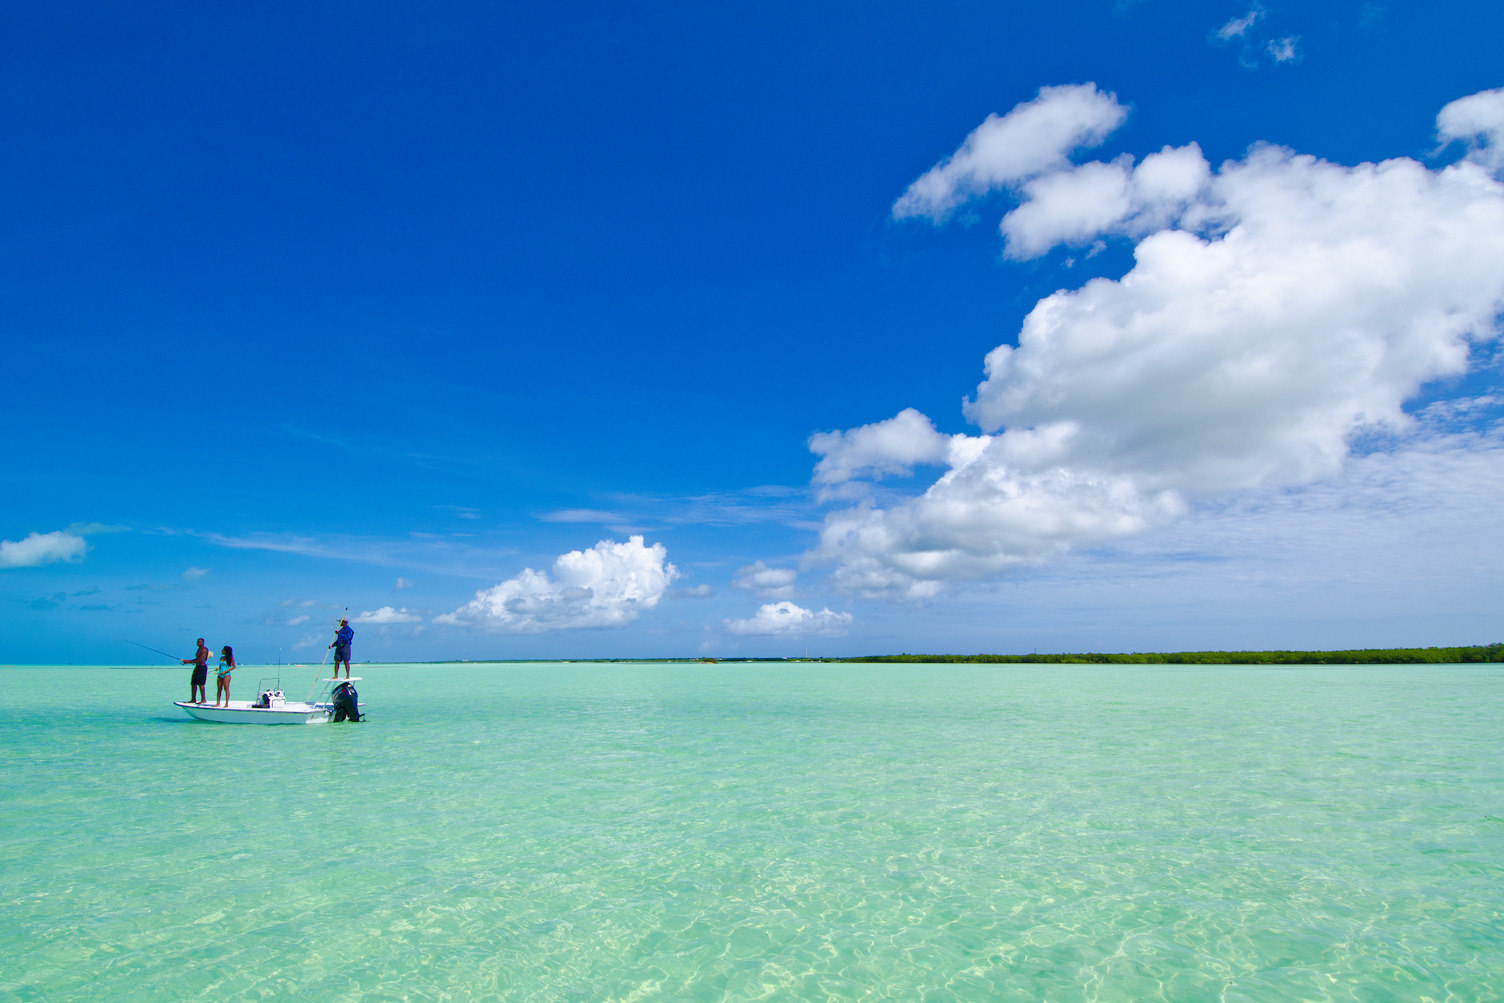 Isole Vergini Britanniche: scopriamo le più belle spiagge dei Caraibi!